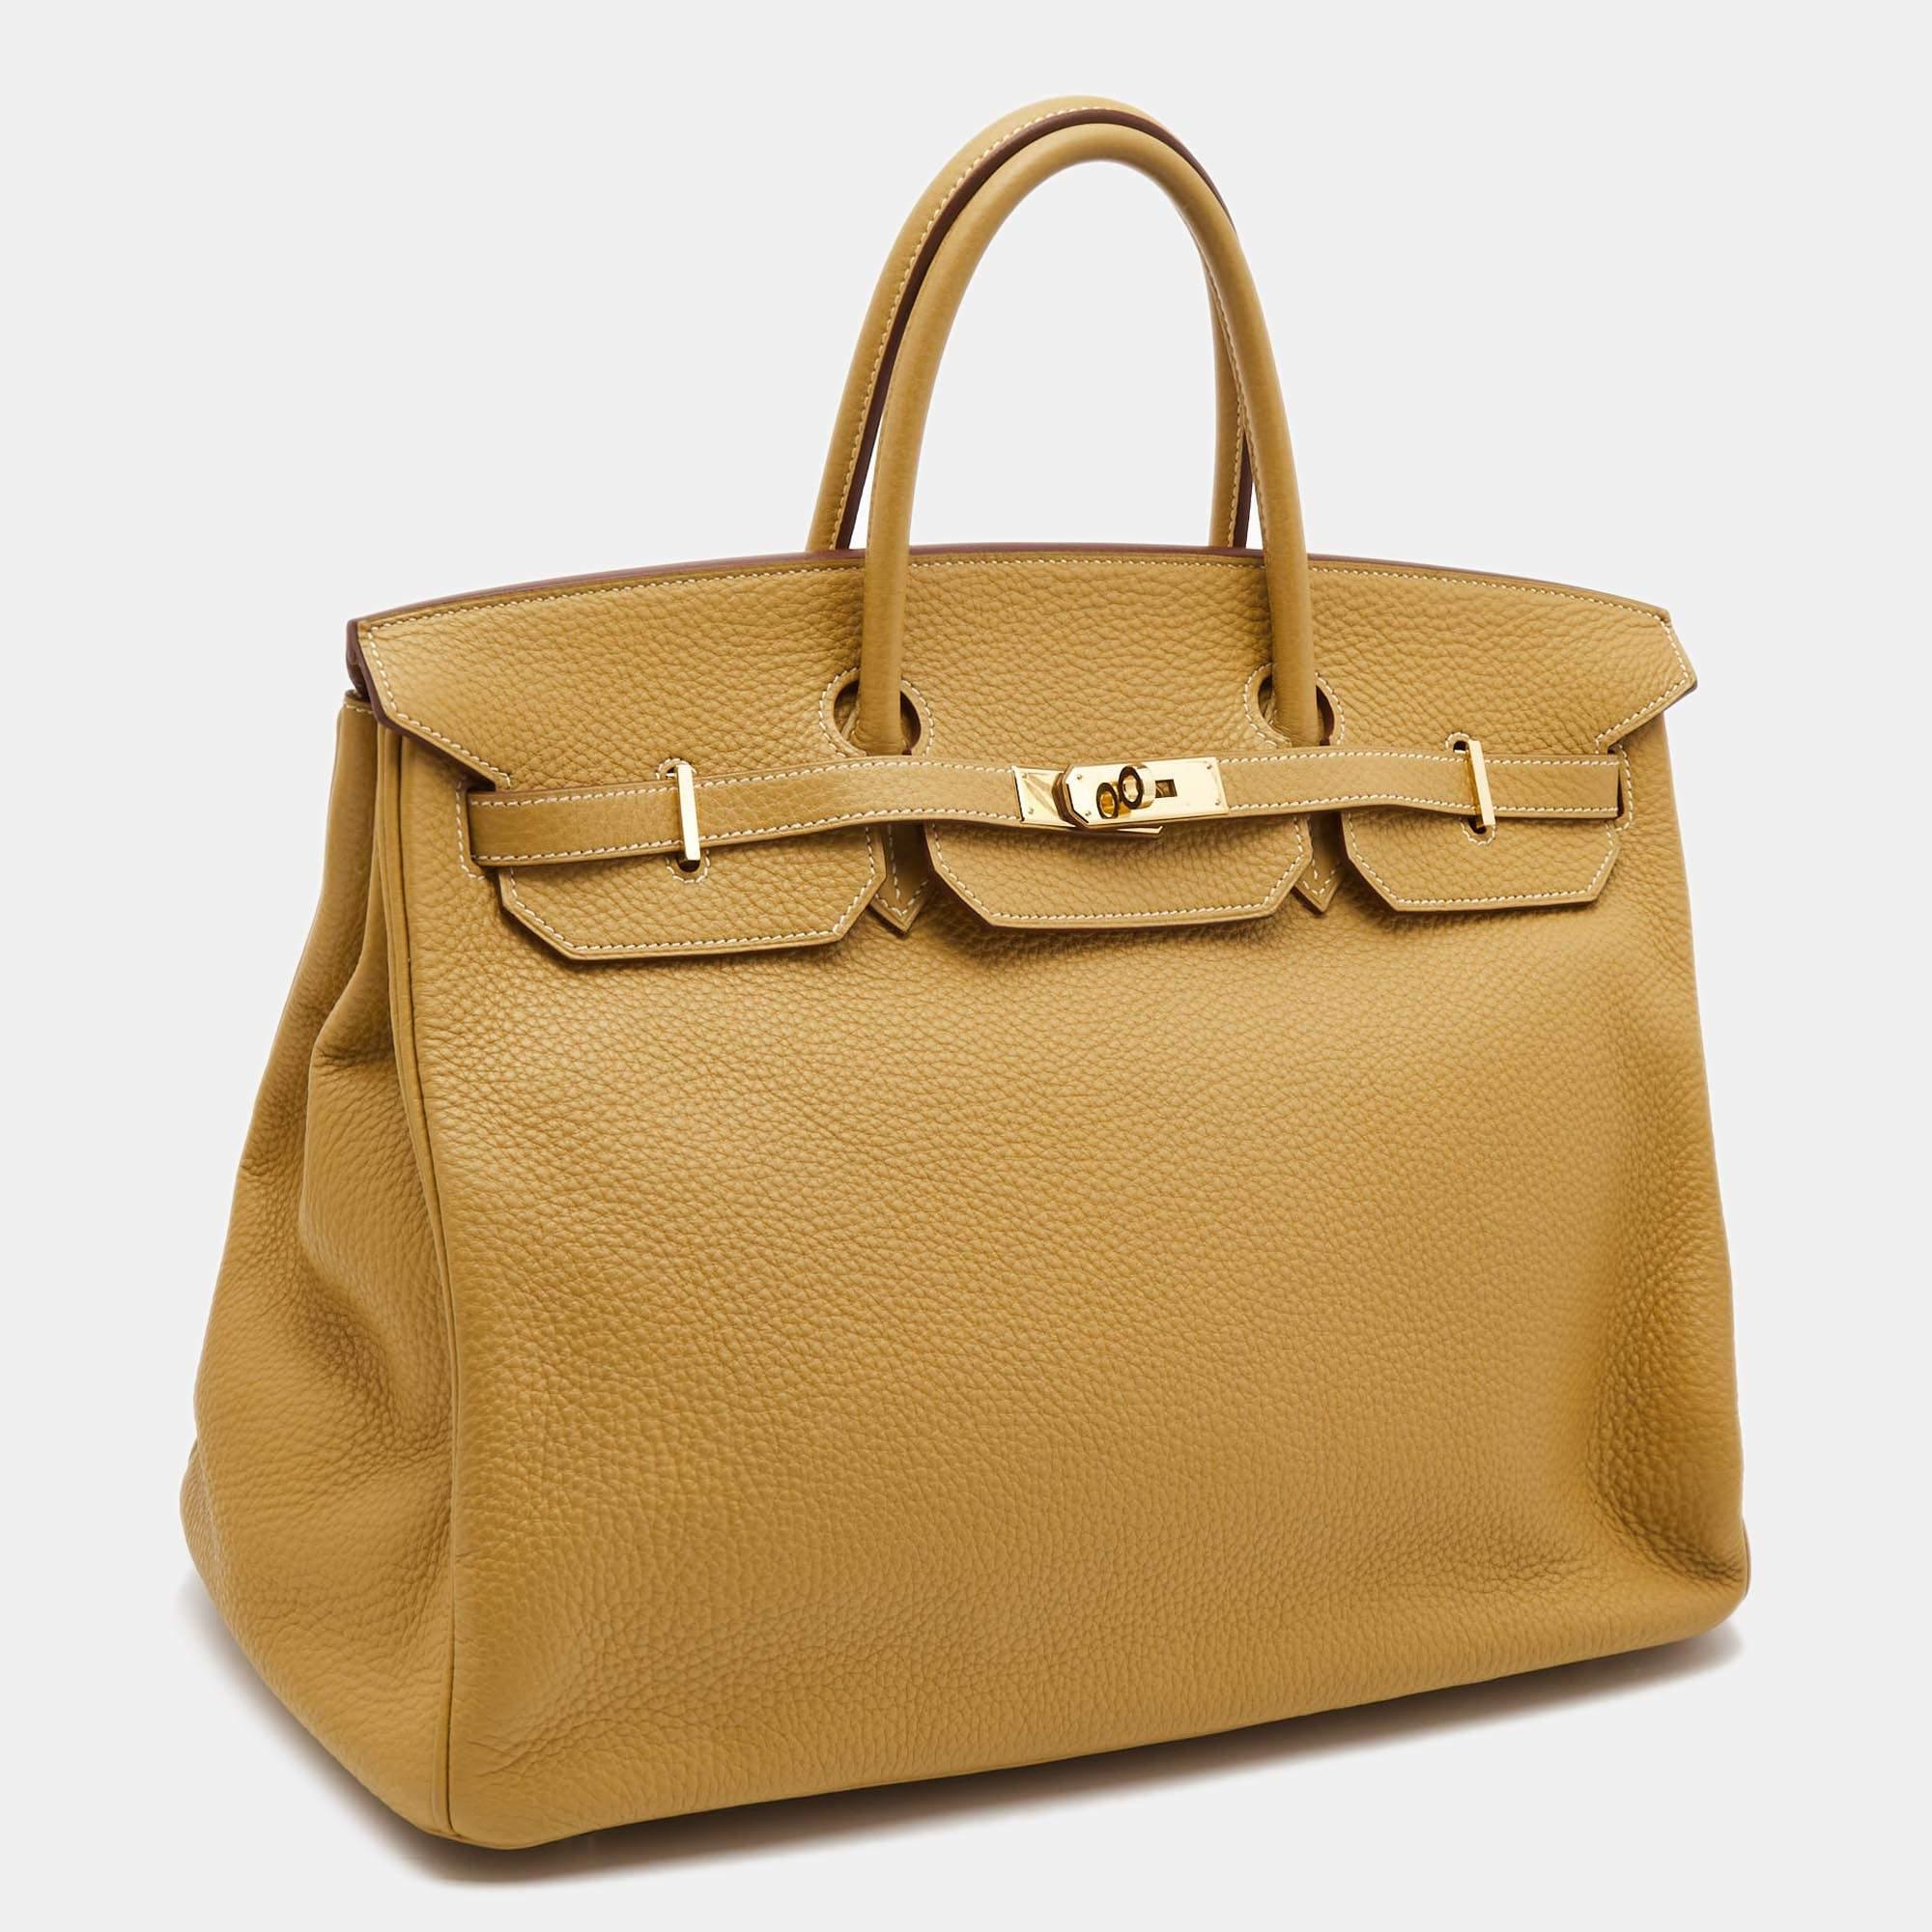 Hermes est réputé pour son savoir-faire irréprochable et sa grande qualité. Le sac à main Hermès Birkin a été inspiré par Jane Birkin et est l'un des sacs à main les plus recherchés au monde. Un classique intemporel qui ne se démode jamais. Fabriqué